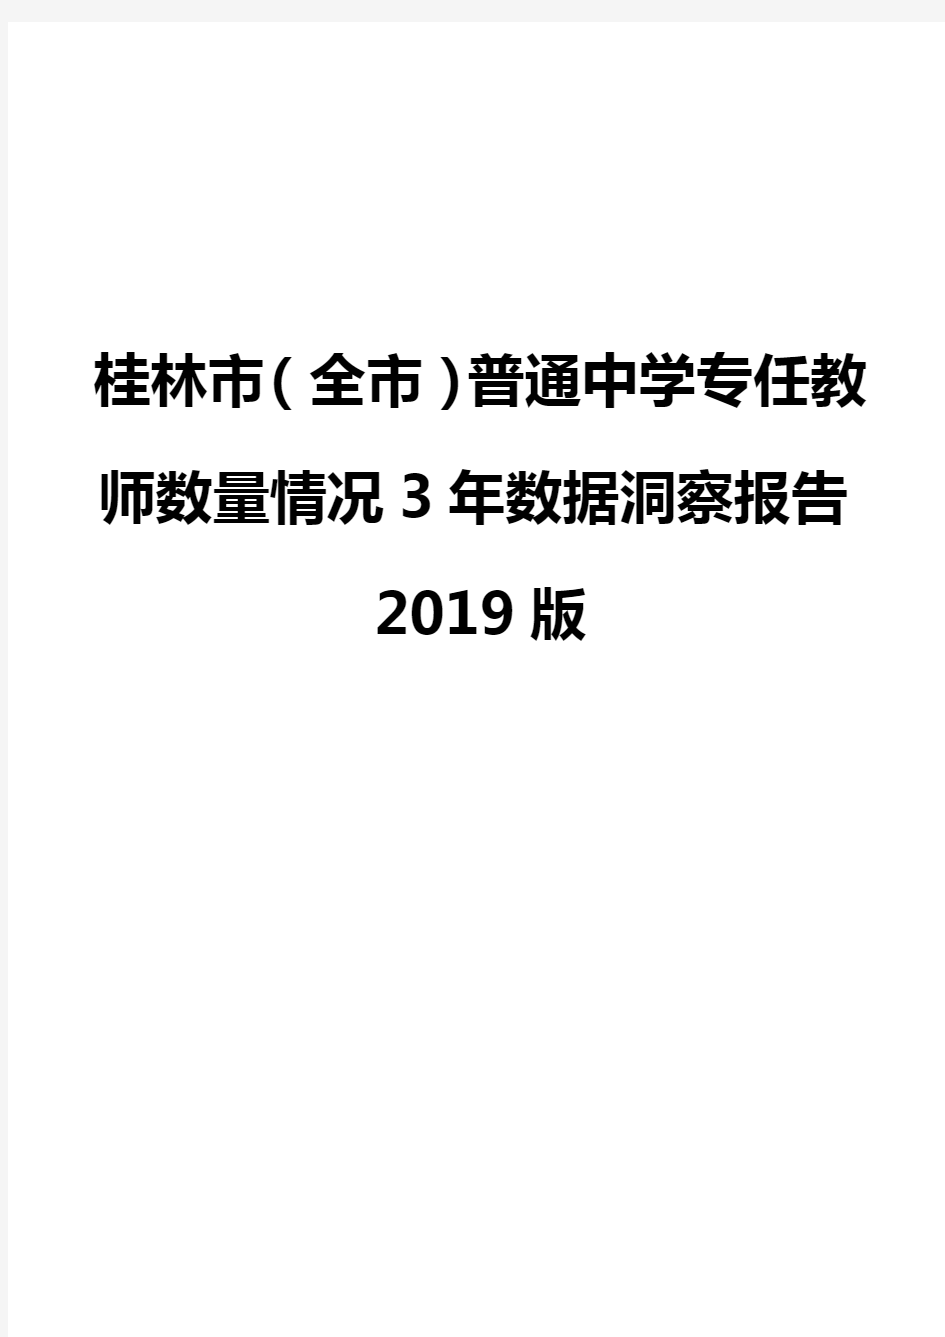 桂林市(全市)普通中学专任教师数量情况3年数据洞察报告2019版